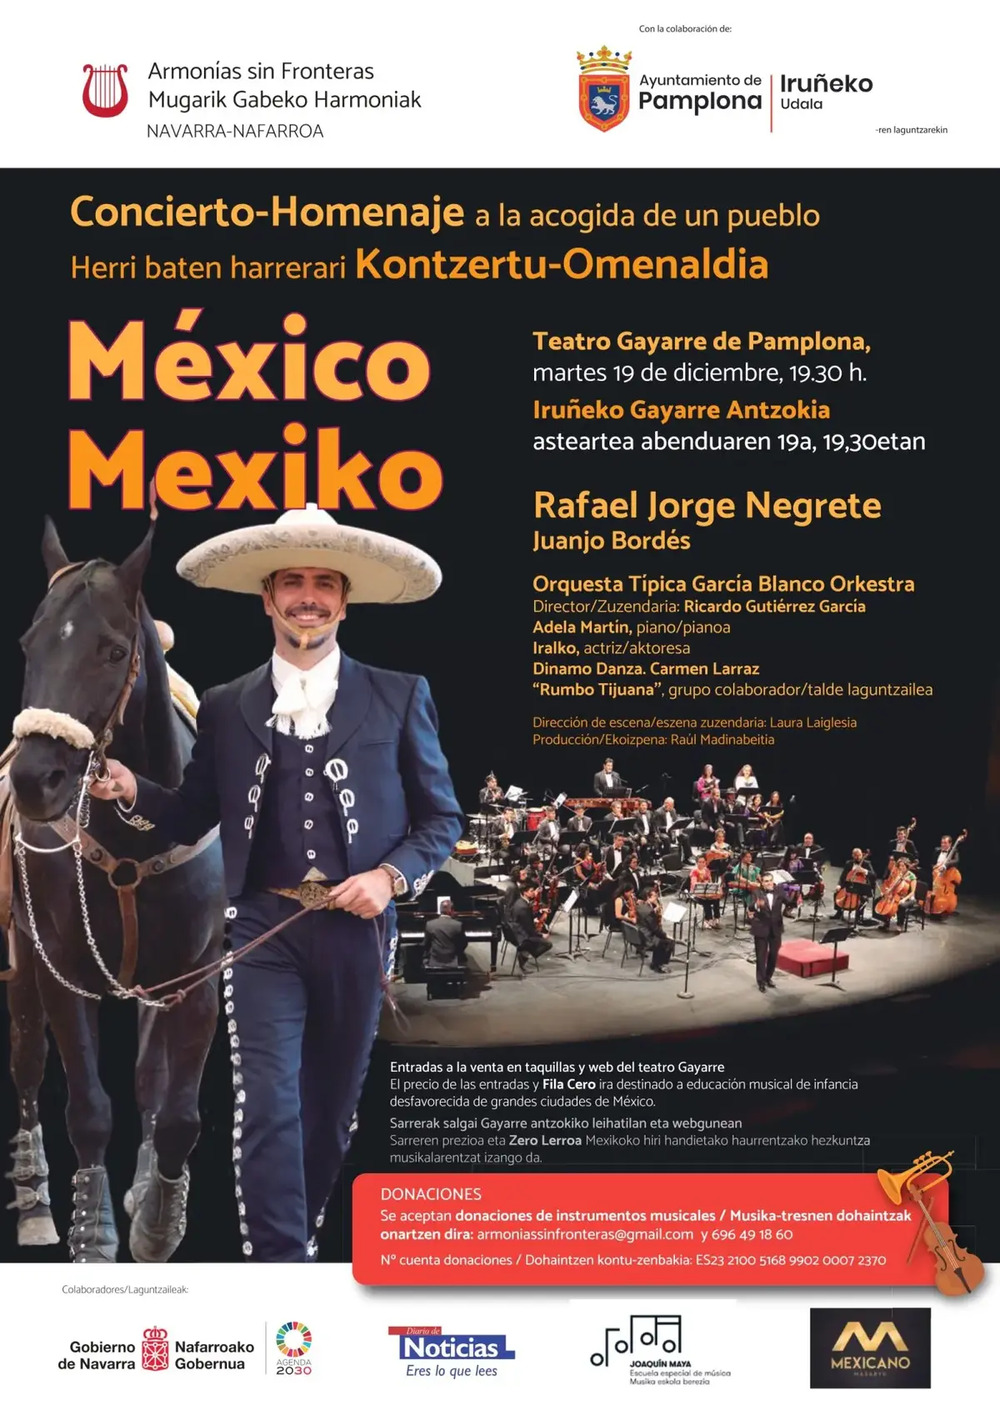 Concierto-homenaje a la acogida de un pueblo: México